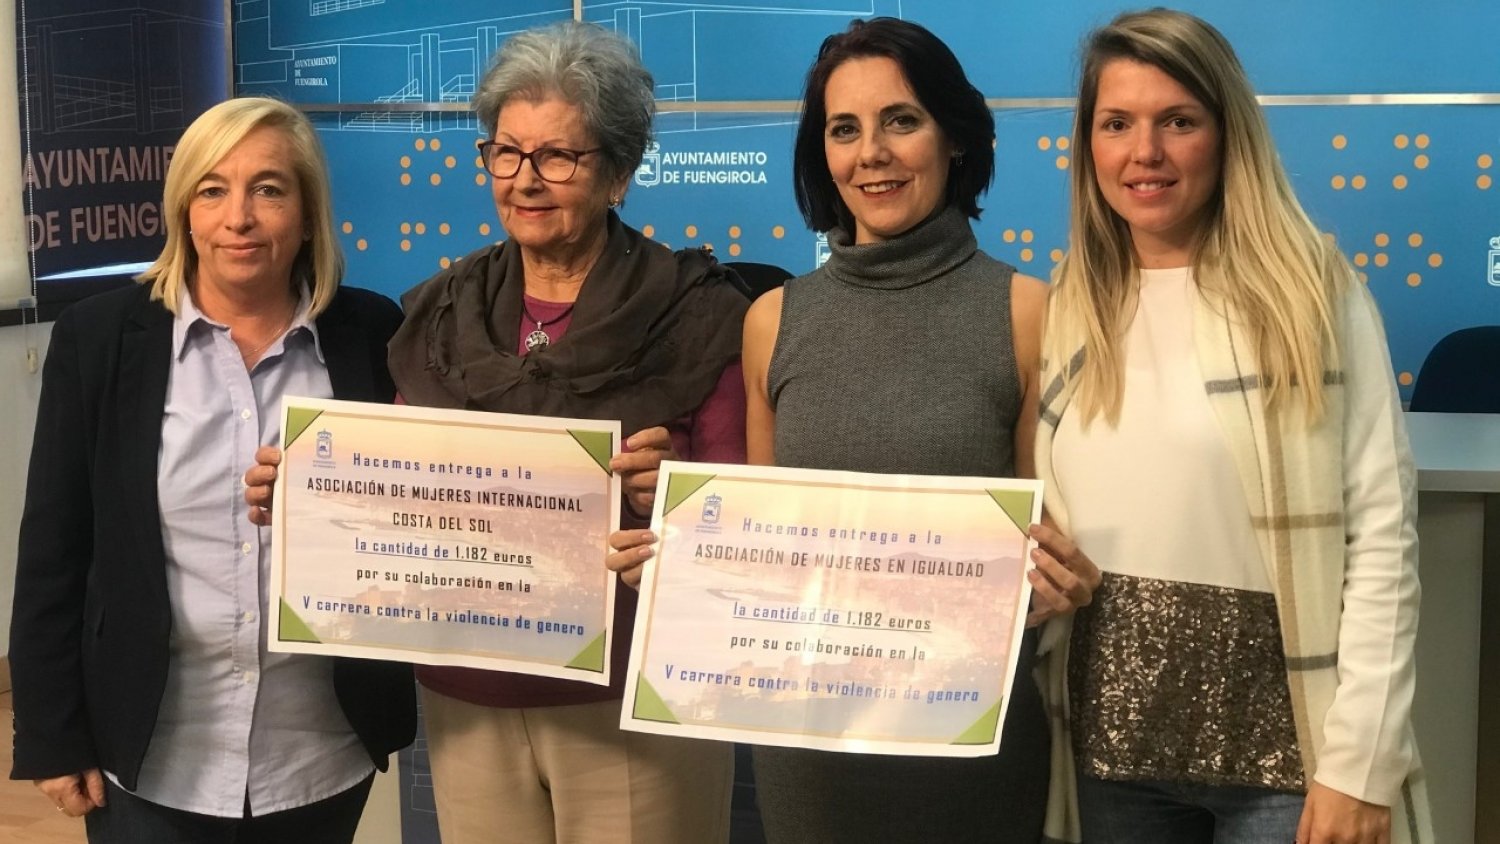 Fuengirola dona a dos asociaciones de mujeres lo recaudado en un carrera contra el machismo